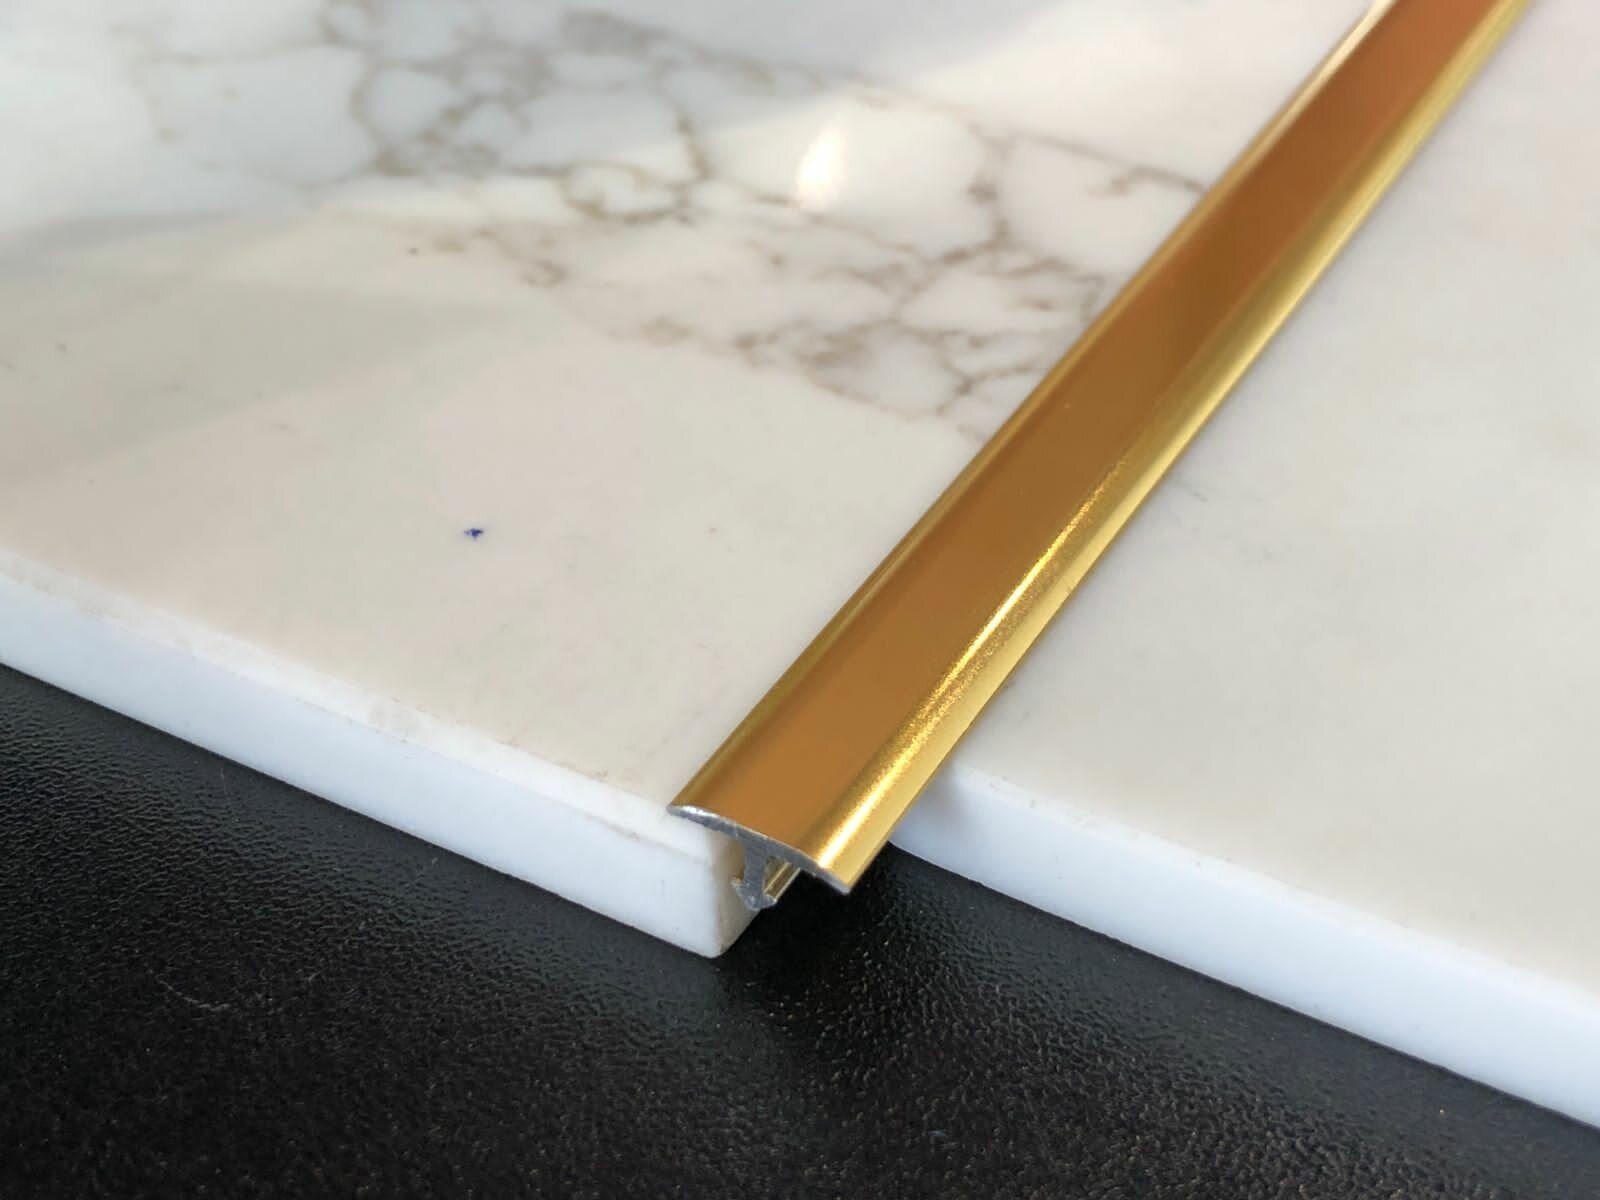 PROCOVER 1045 - Т-образный профиль из алюминия полированного цвет золото блестящее размер 10 мм высота 4.5 мм длина 2.7 метра. PCRBO 1045